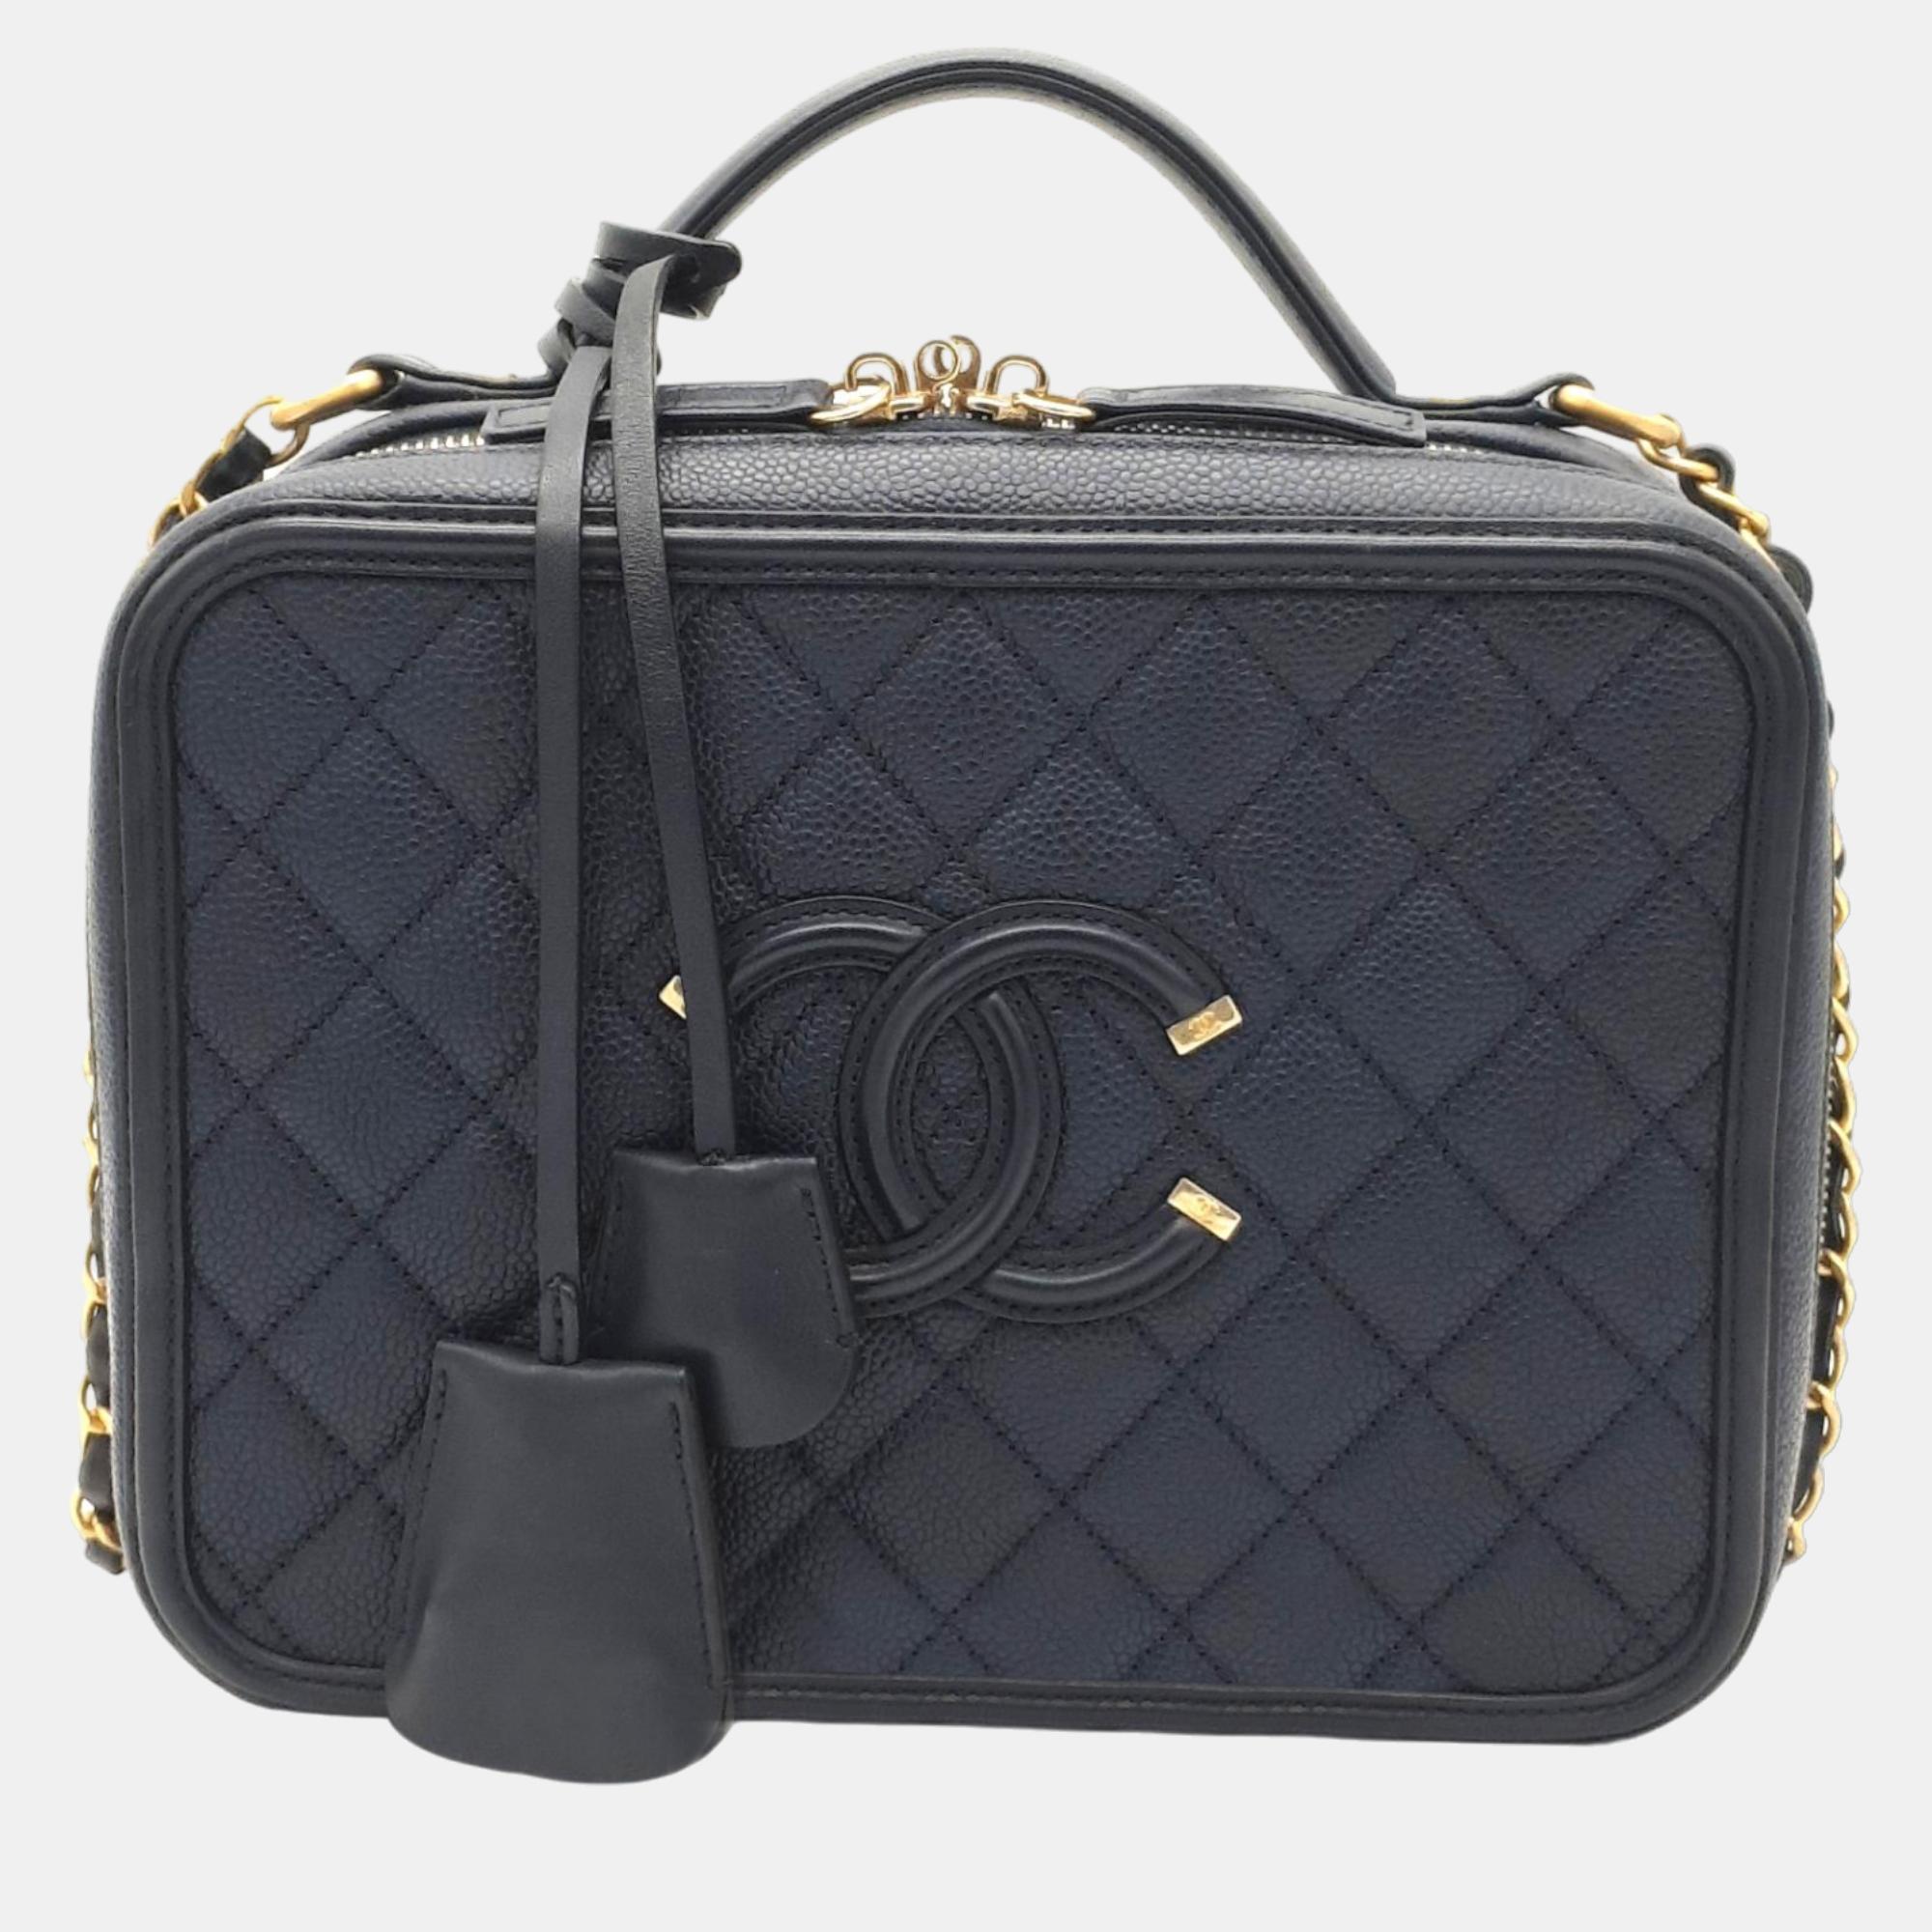 Chanel Navy Blue Leather Medium Filigree Vanity Shoulder Bag